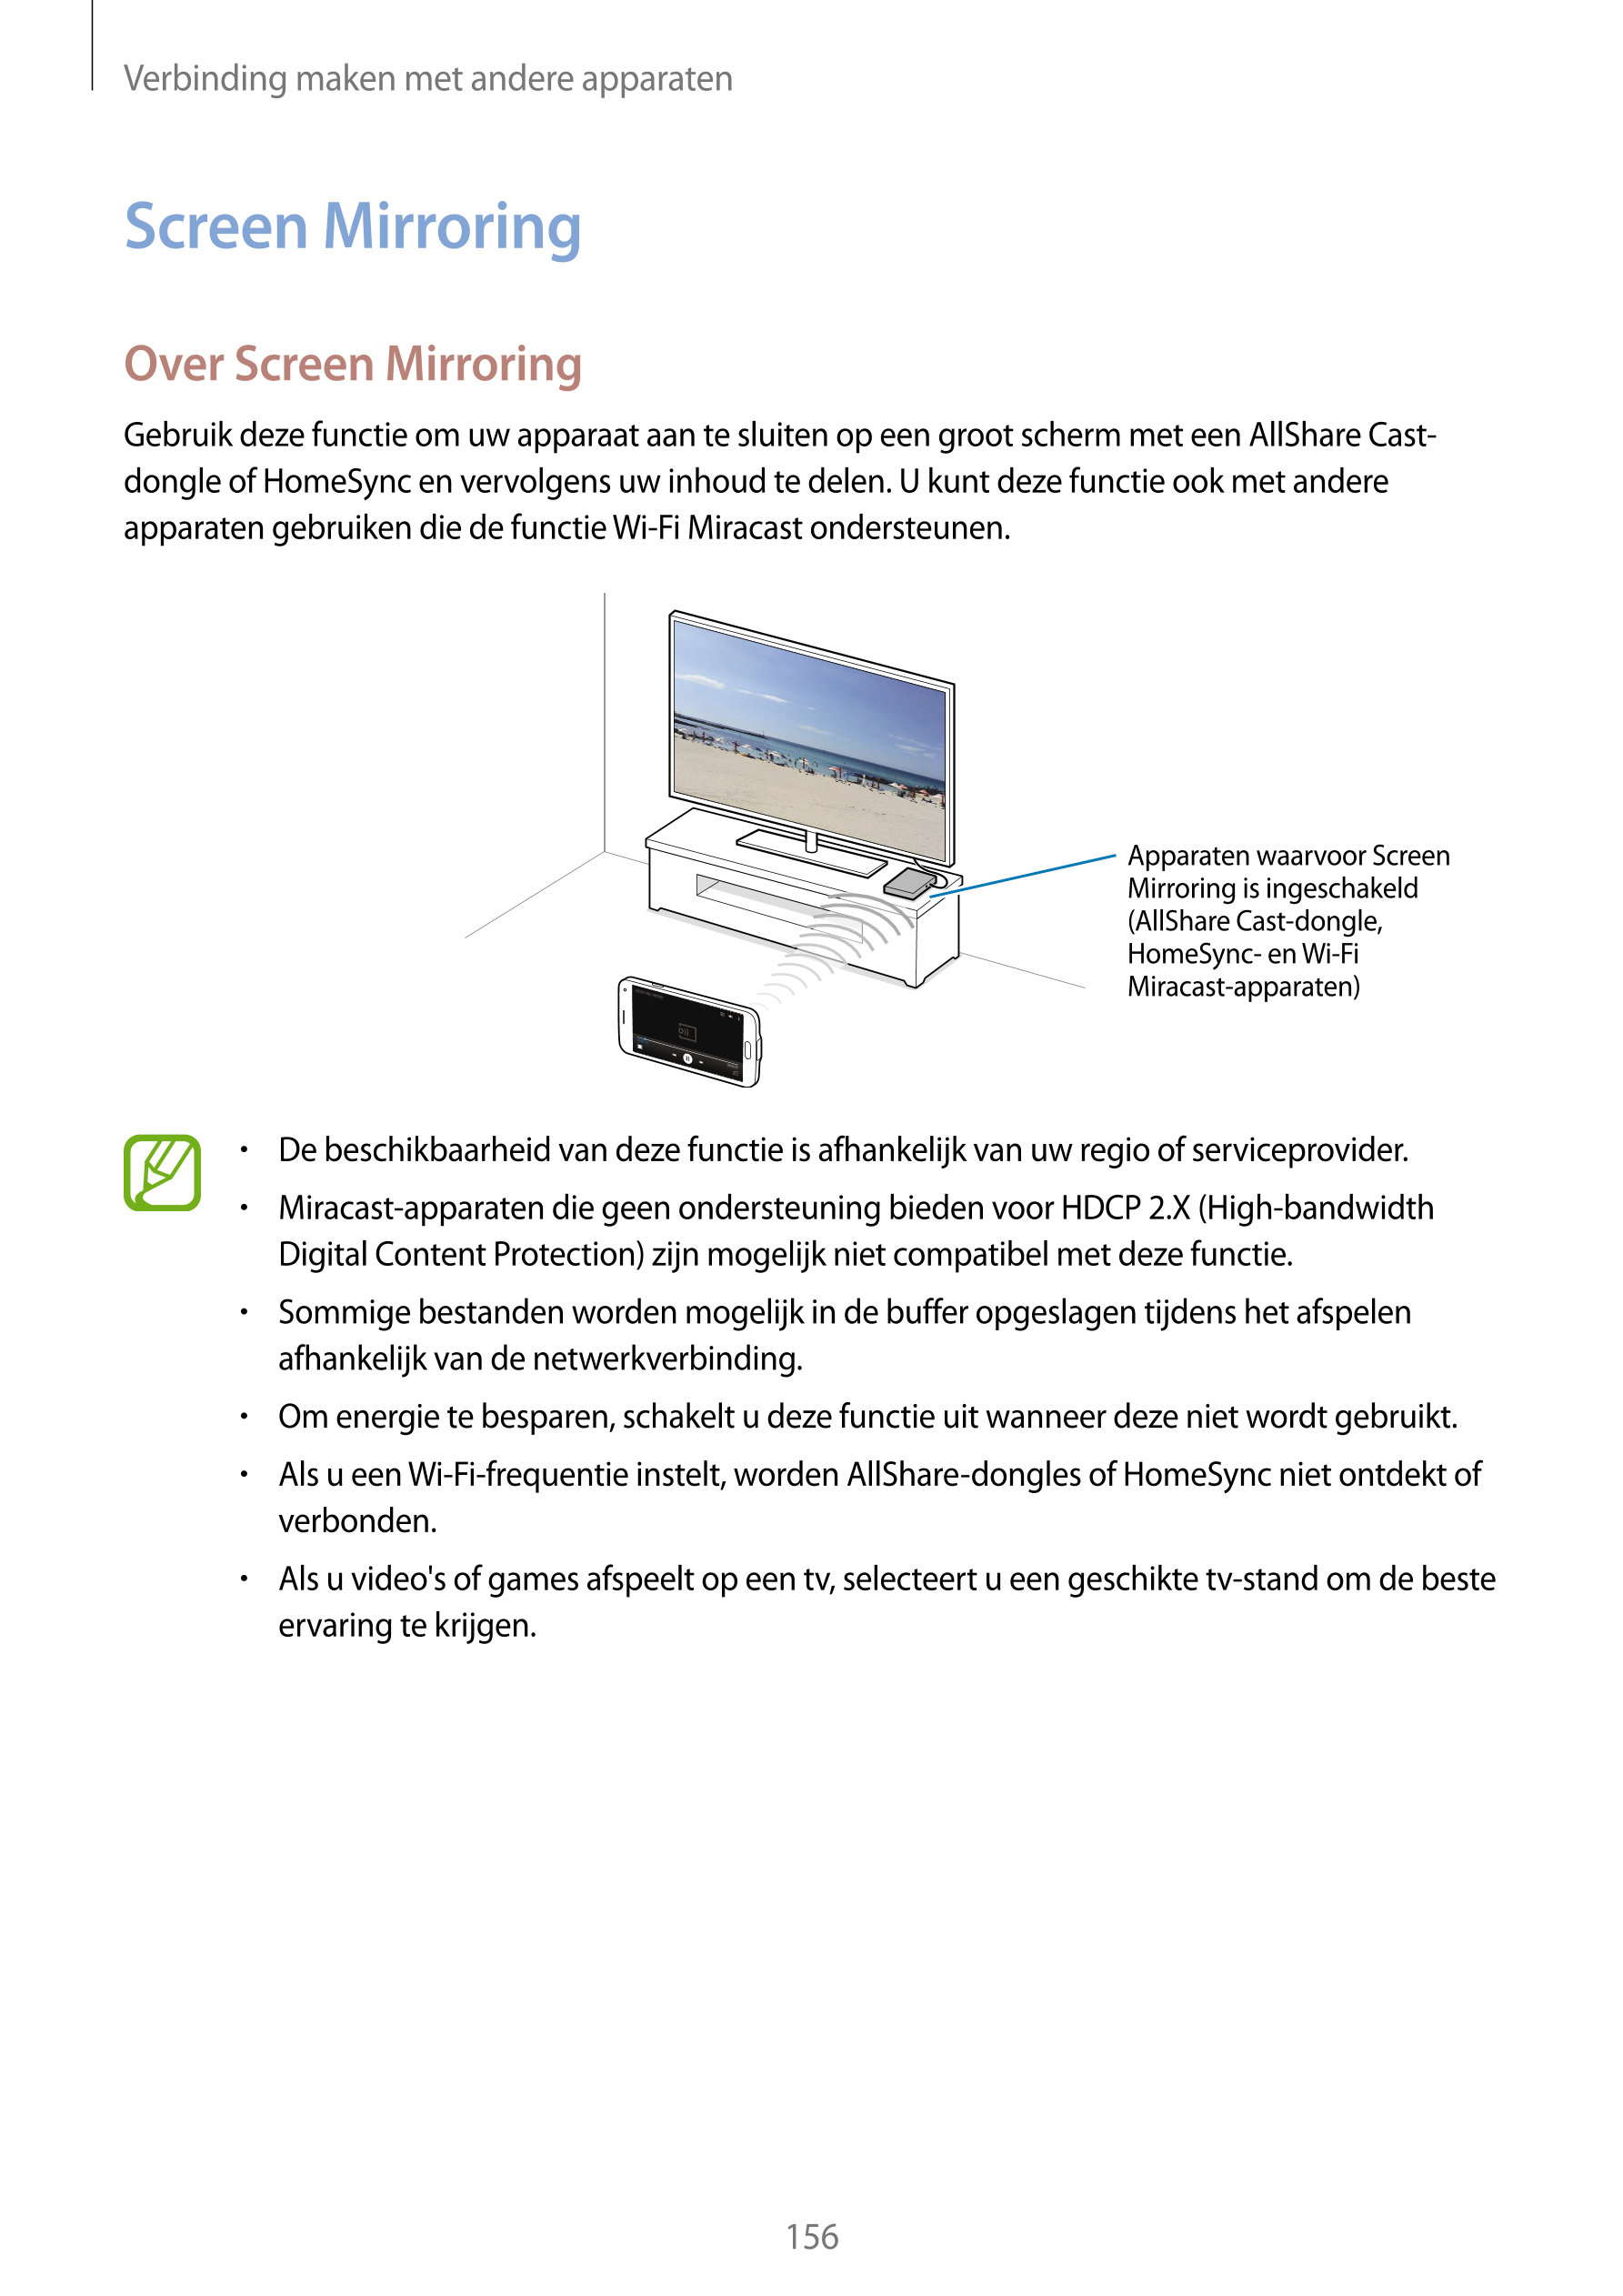 Verbinding maken met andere apparaten
Screen Mirroring
Over Screen Mirroring
Gebruik deze functie om uw apparaat aan te sluiten 